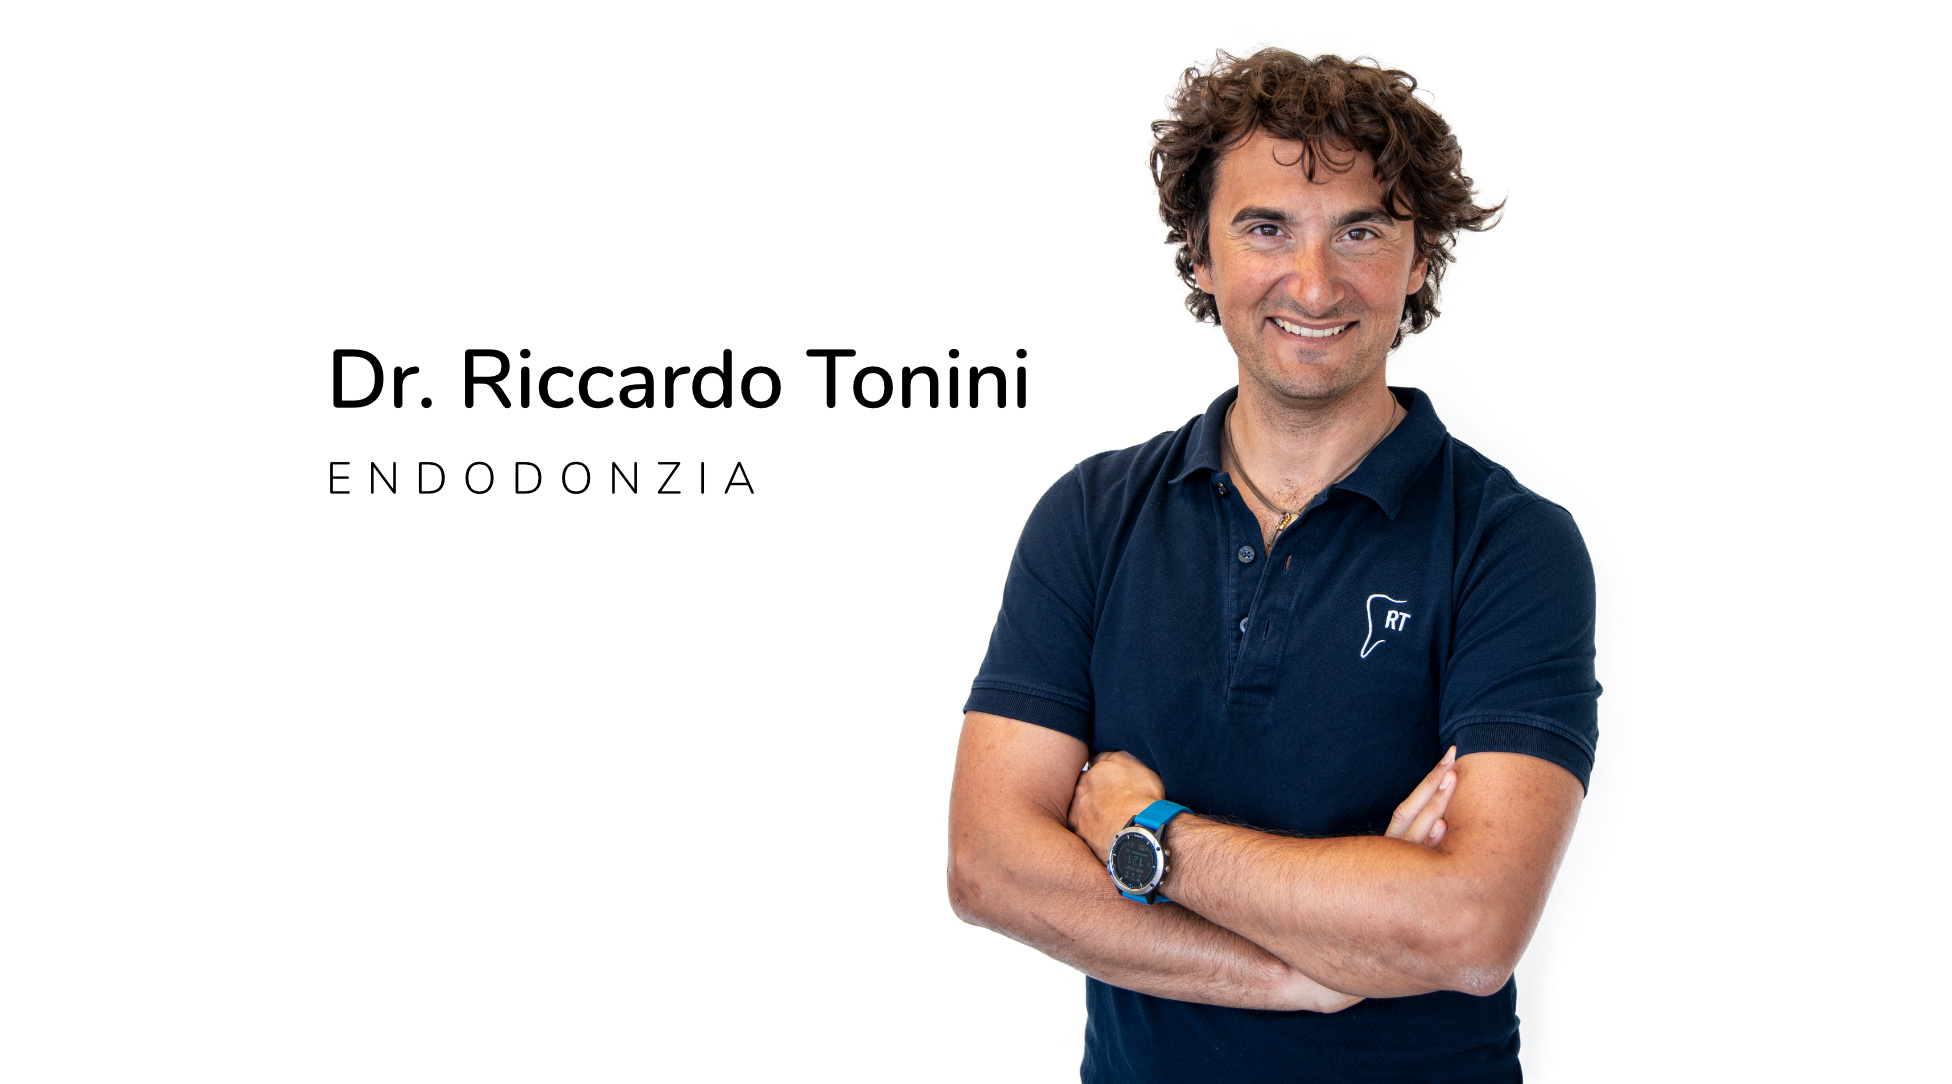 Dr. Riccardo Tonini